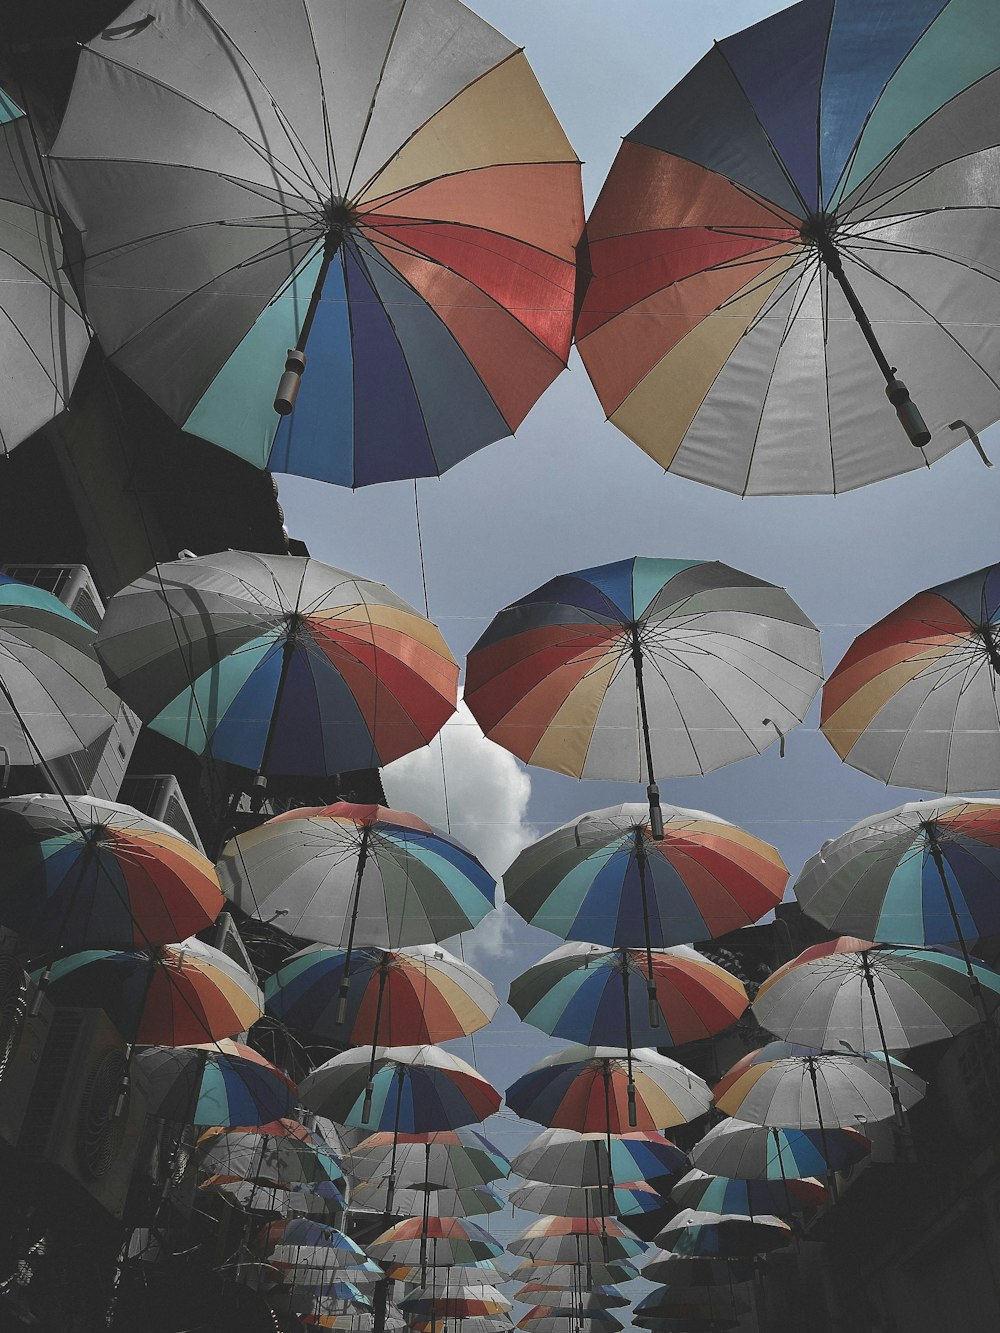 paraguas con los colores del arco iris